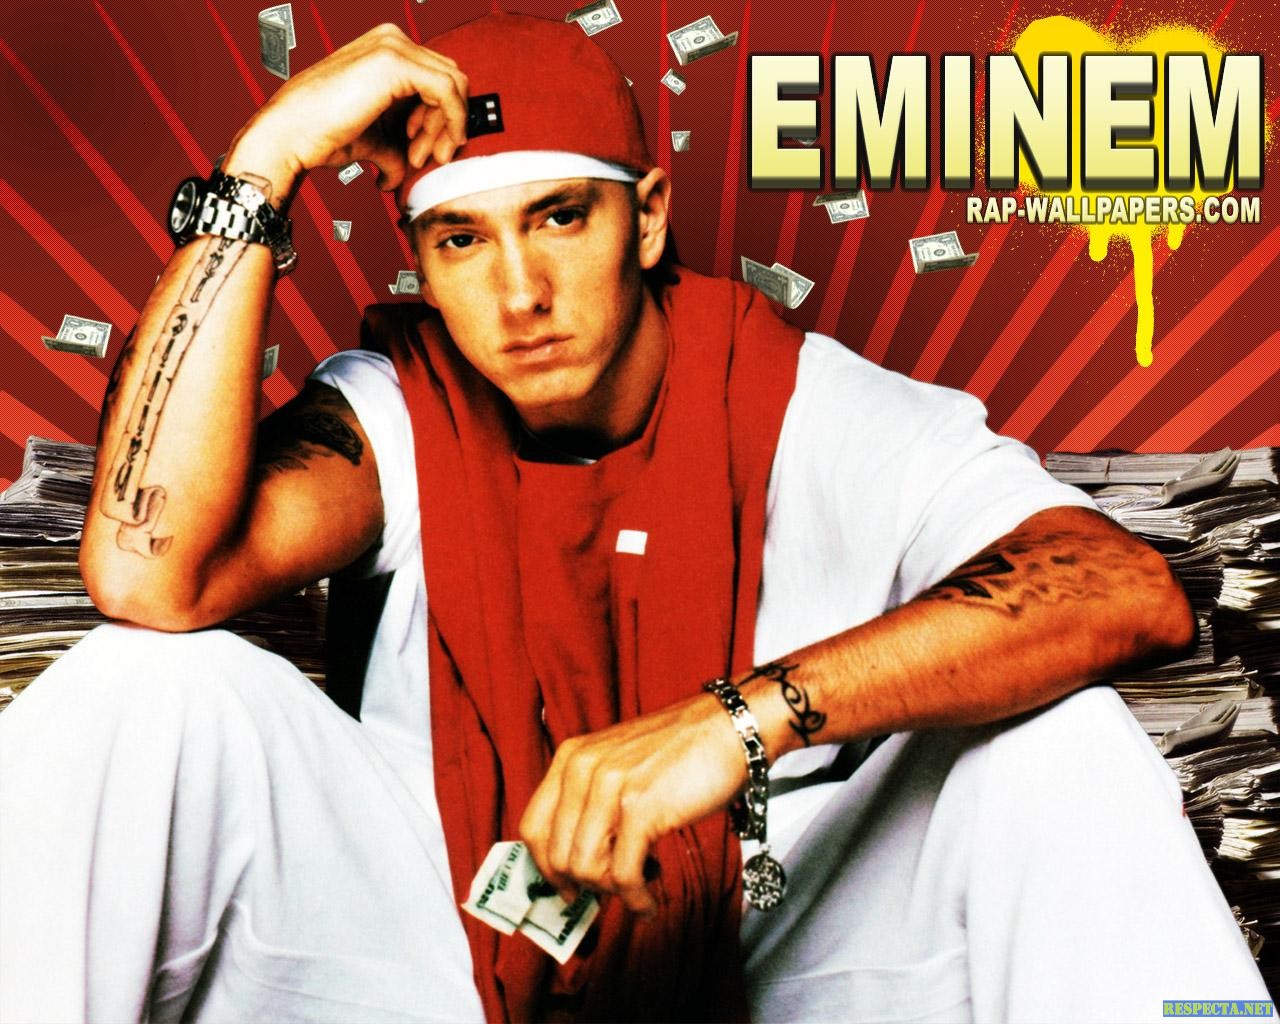 http://1.bp.blogspot.com/-1ECpnSxspP4/T30-d6niqbI/AAAAAAAABzU/fmF0mePus1A/s1600/Eminem-07.jpg